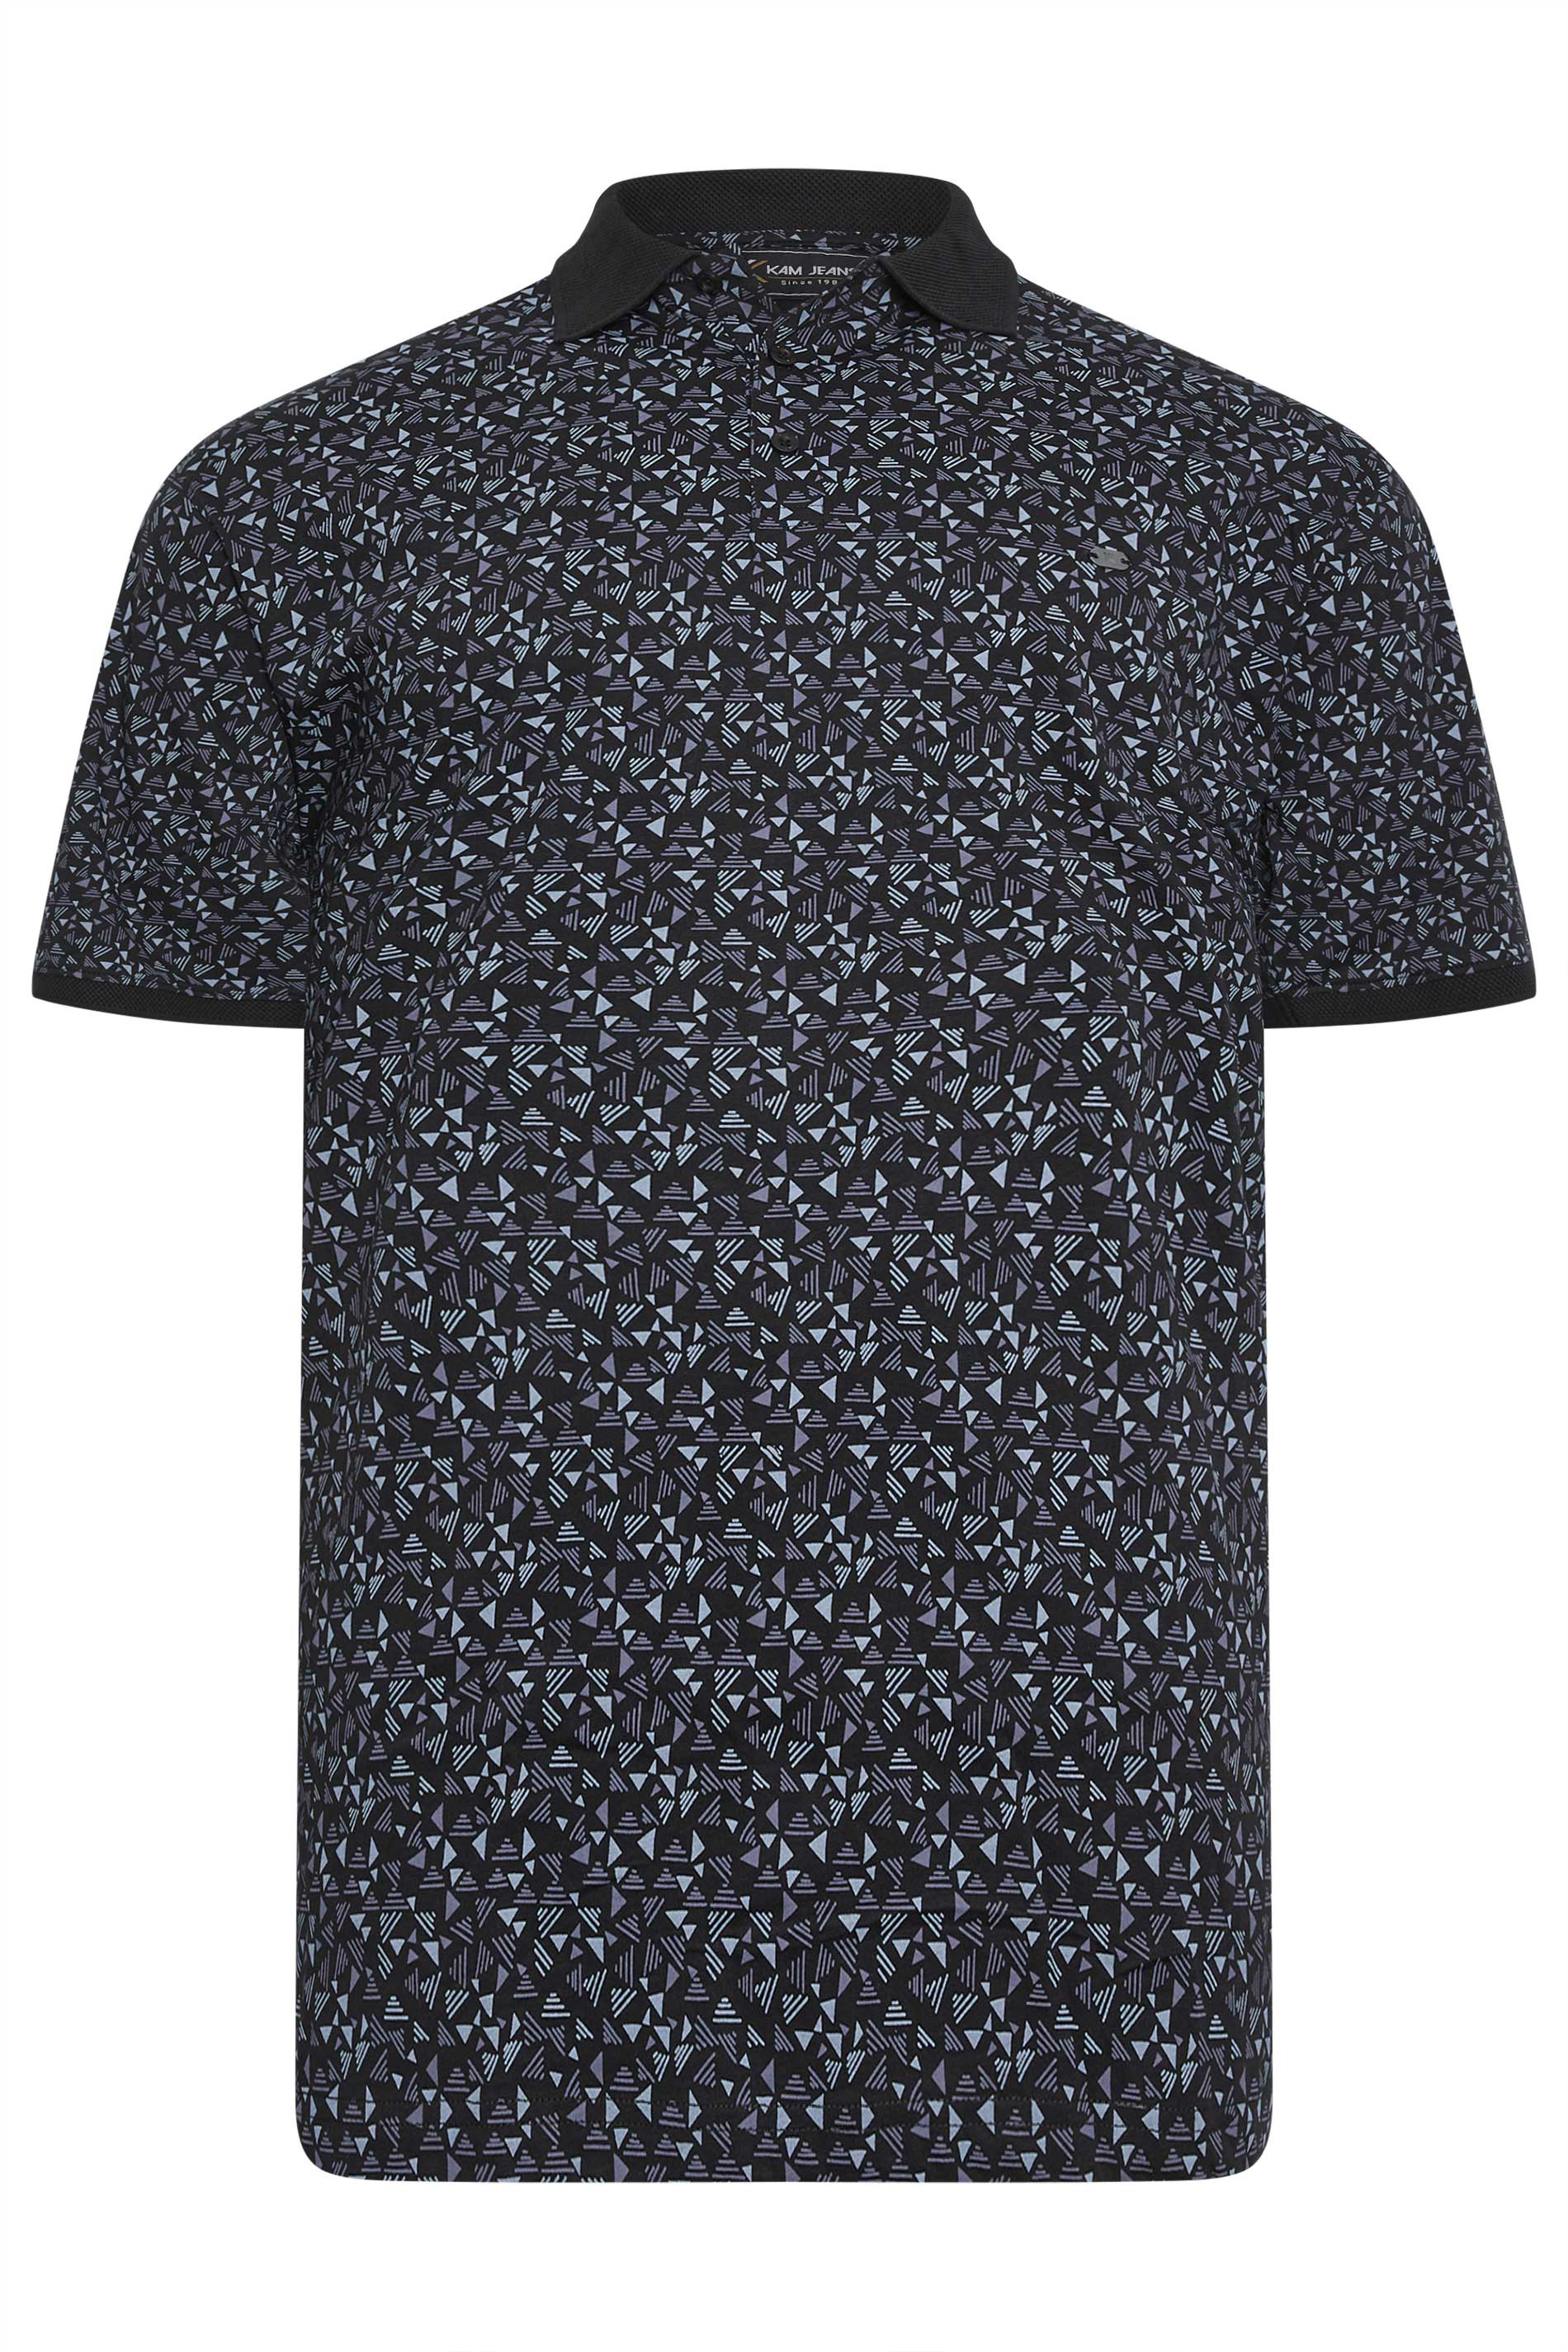 KAM Big & Tall Black Arrow Head Print Polo Shirt | BadRhino 1